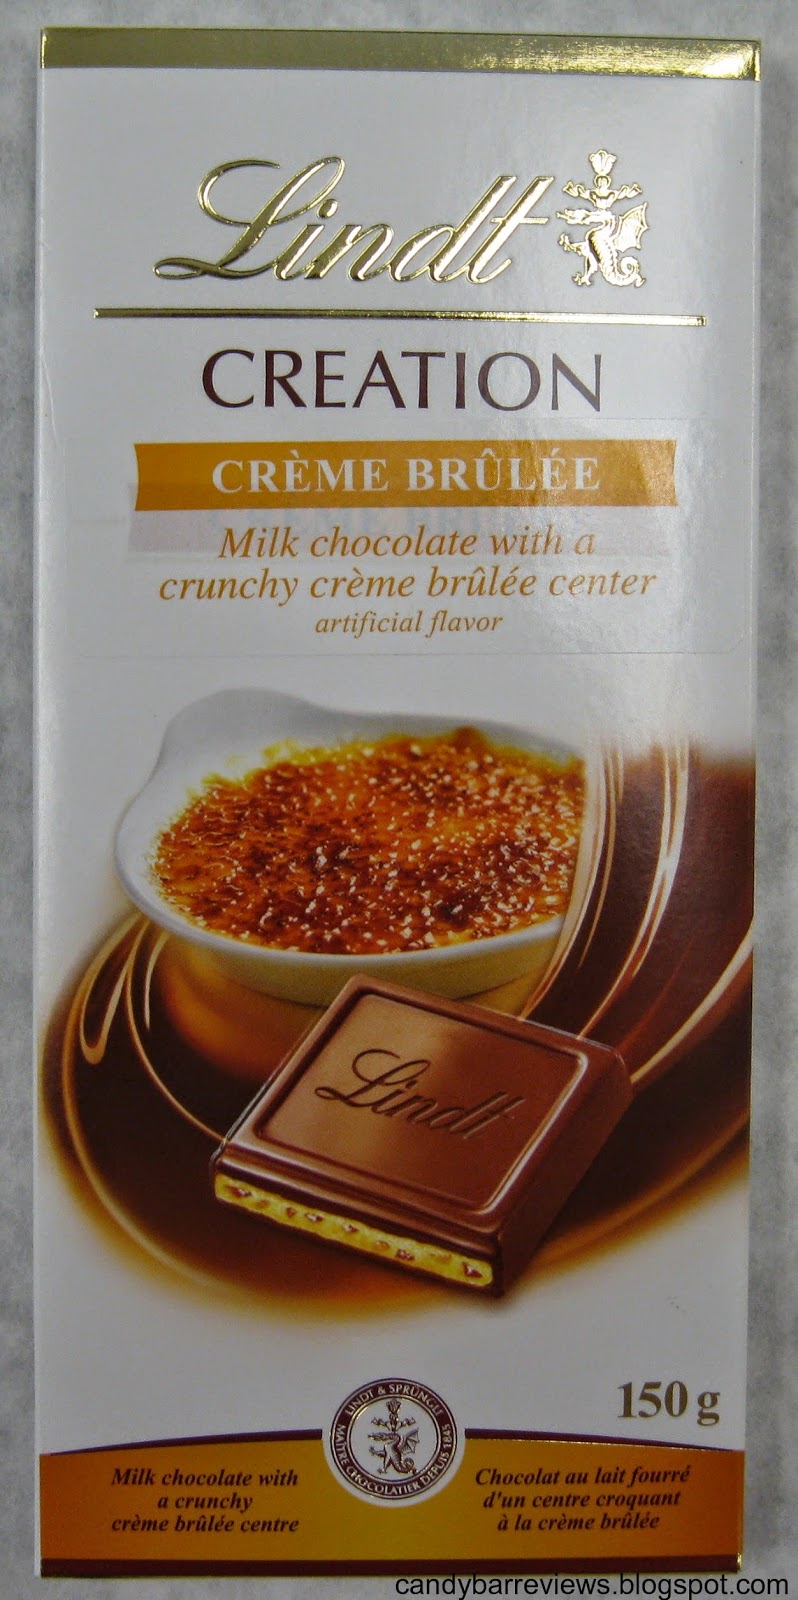 Chocolat au lait crème brûlée, Lindt (150 g)